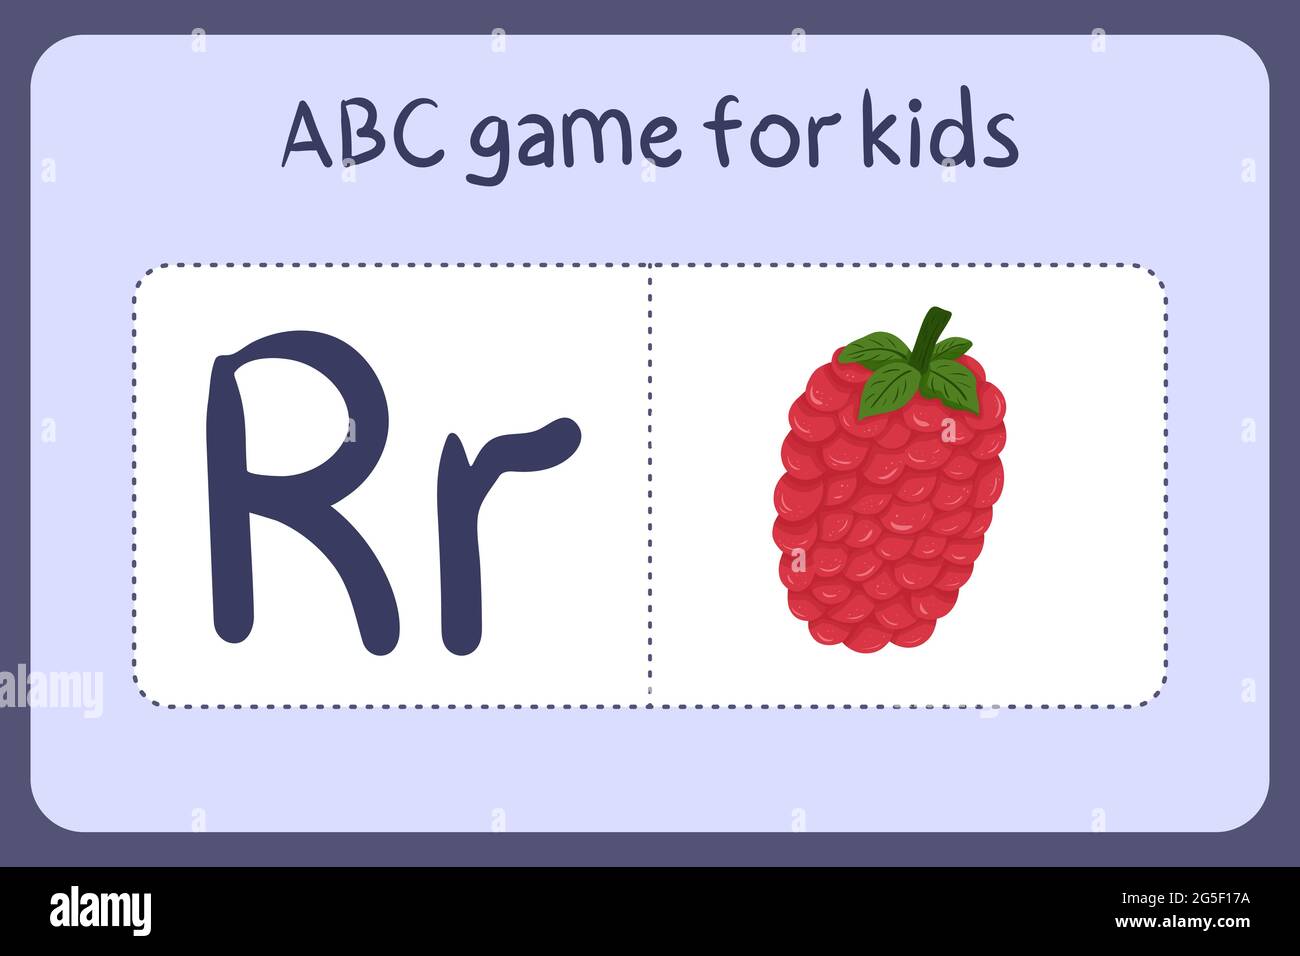 Kind Alphabet Mini-Spiele im Cartoon-Stil mit dem Buchstaben R - Himbeere. Vektor-Illustration für Spiel-Design - Schneiden und spielen. Lerne abc mit Flash-Karten für Obst und Gemüse. Stock Vektor